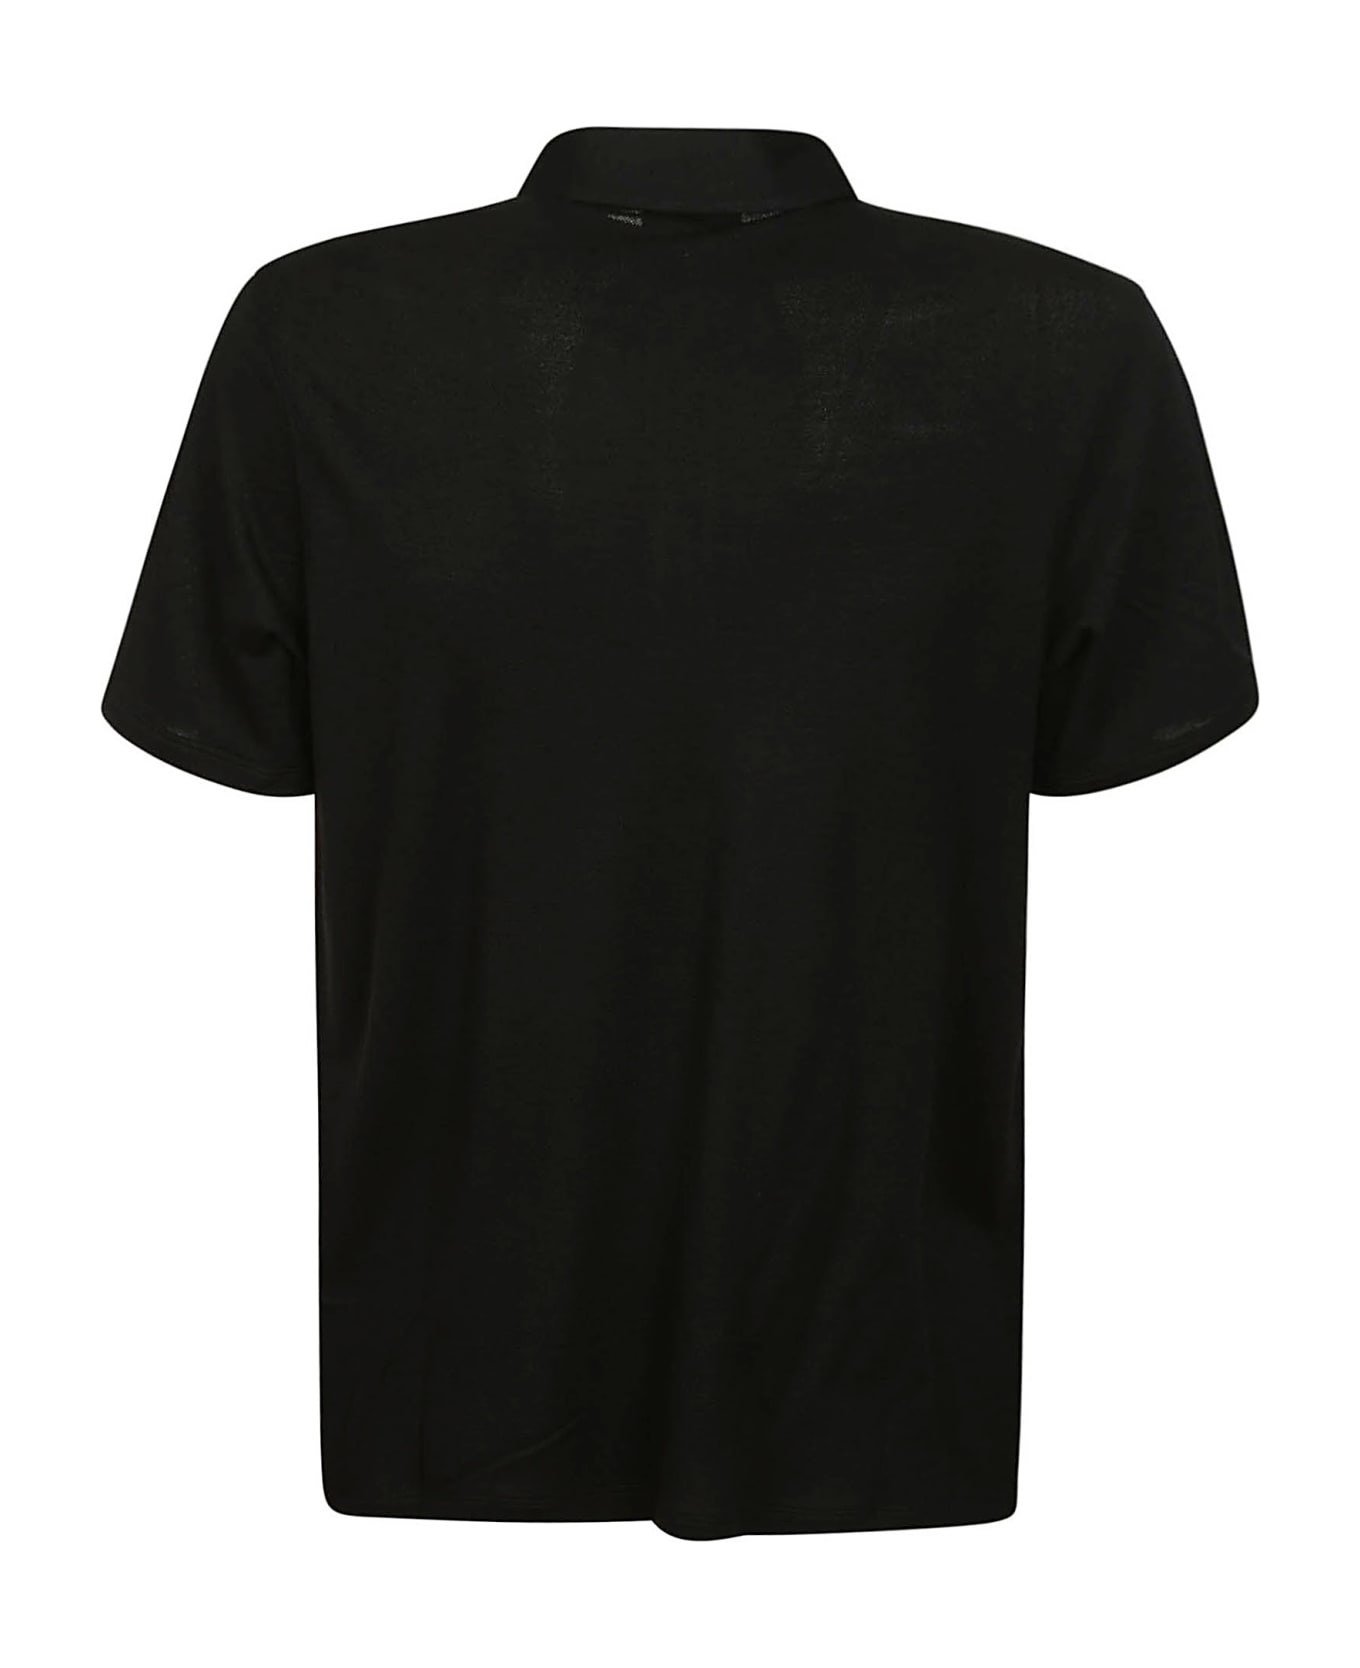 Isaia Tshirt - Black ポロシャツ